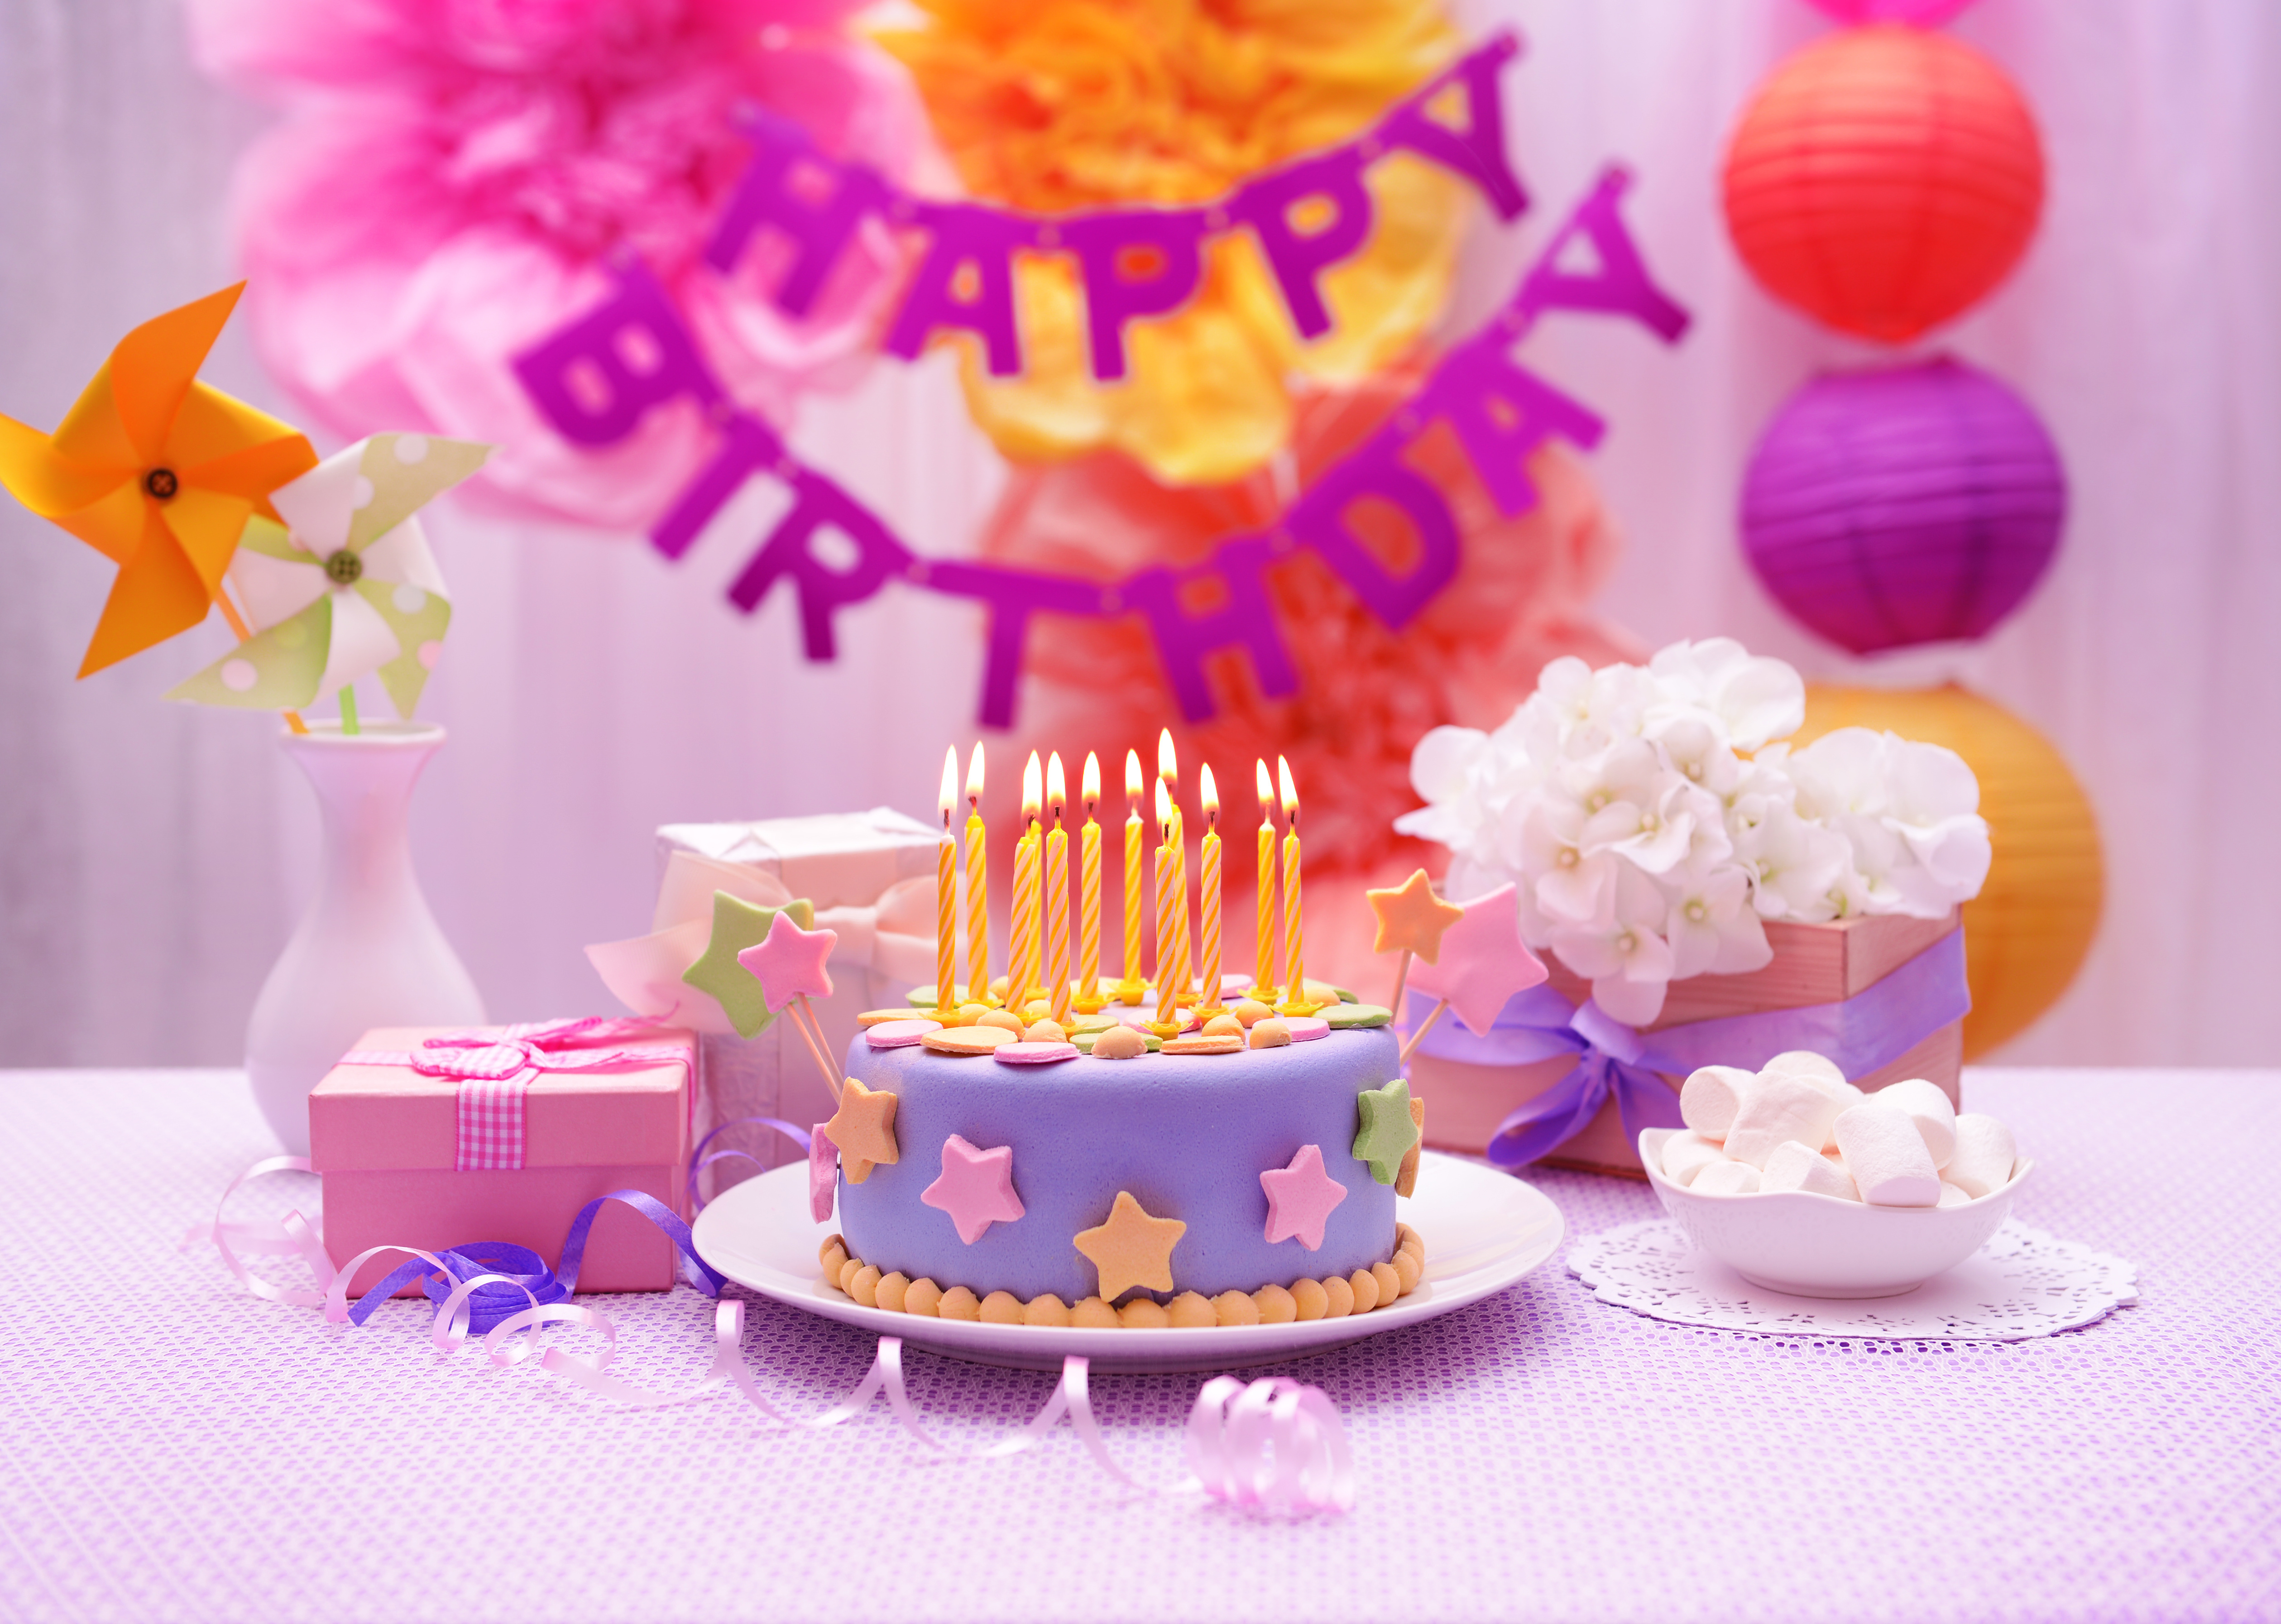 Ден рождения. Тортики на день рождения. Торт с днем рождения!. С днем рождения торт и цветы. С днем рождения тортиктик.